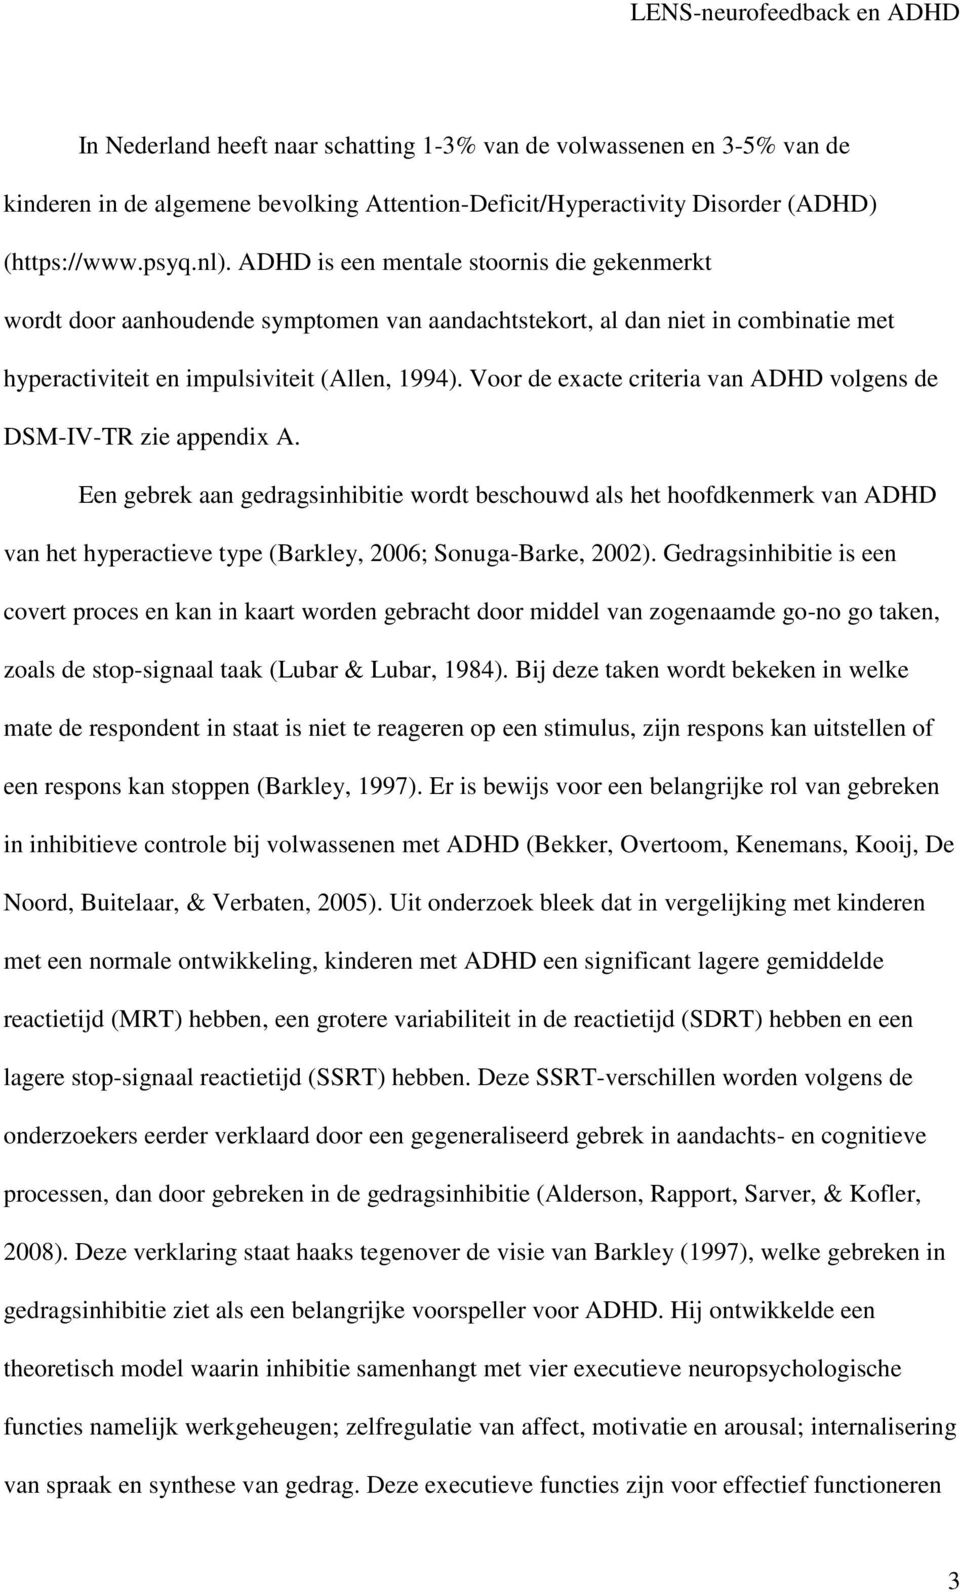 Voor de exacte criteria van ADHD volgens de DSM-IV-TR zie appendix A.